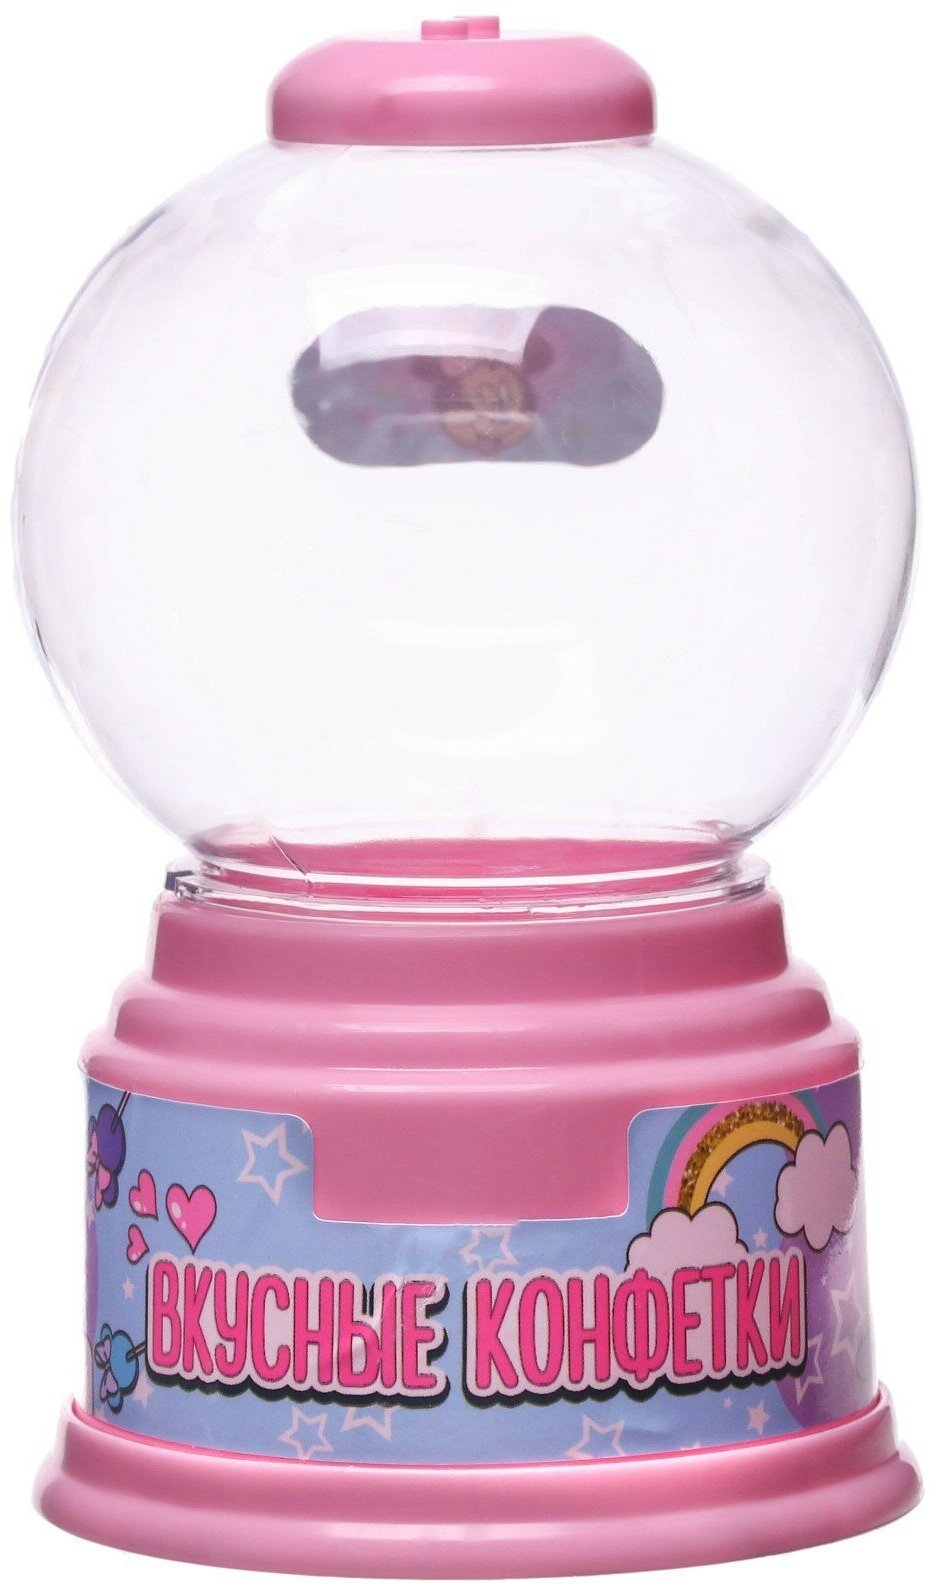 Детский автомат для конфет Disney "Конфетница. Минни Маус", розовый, для девочек